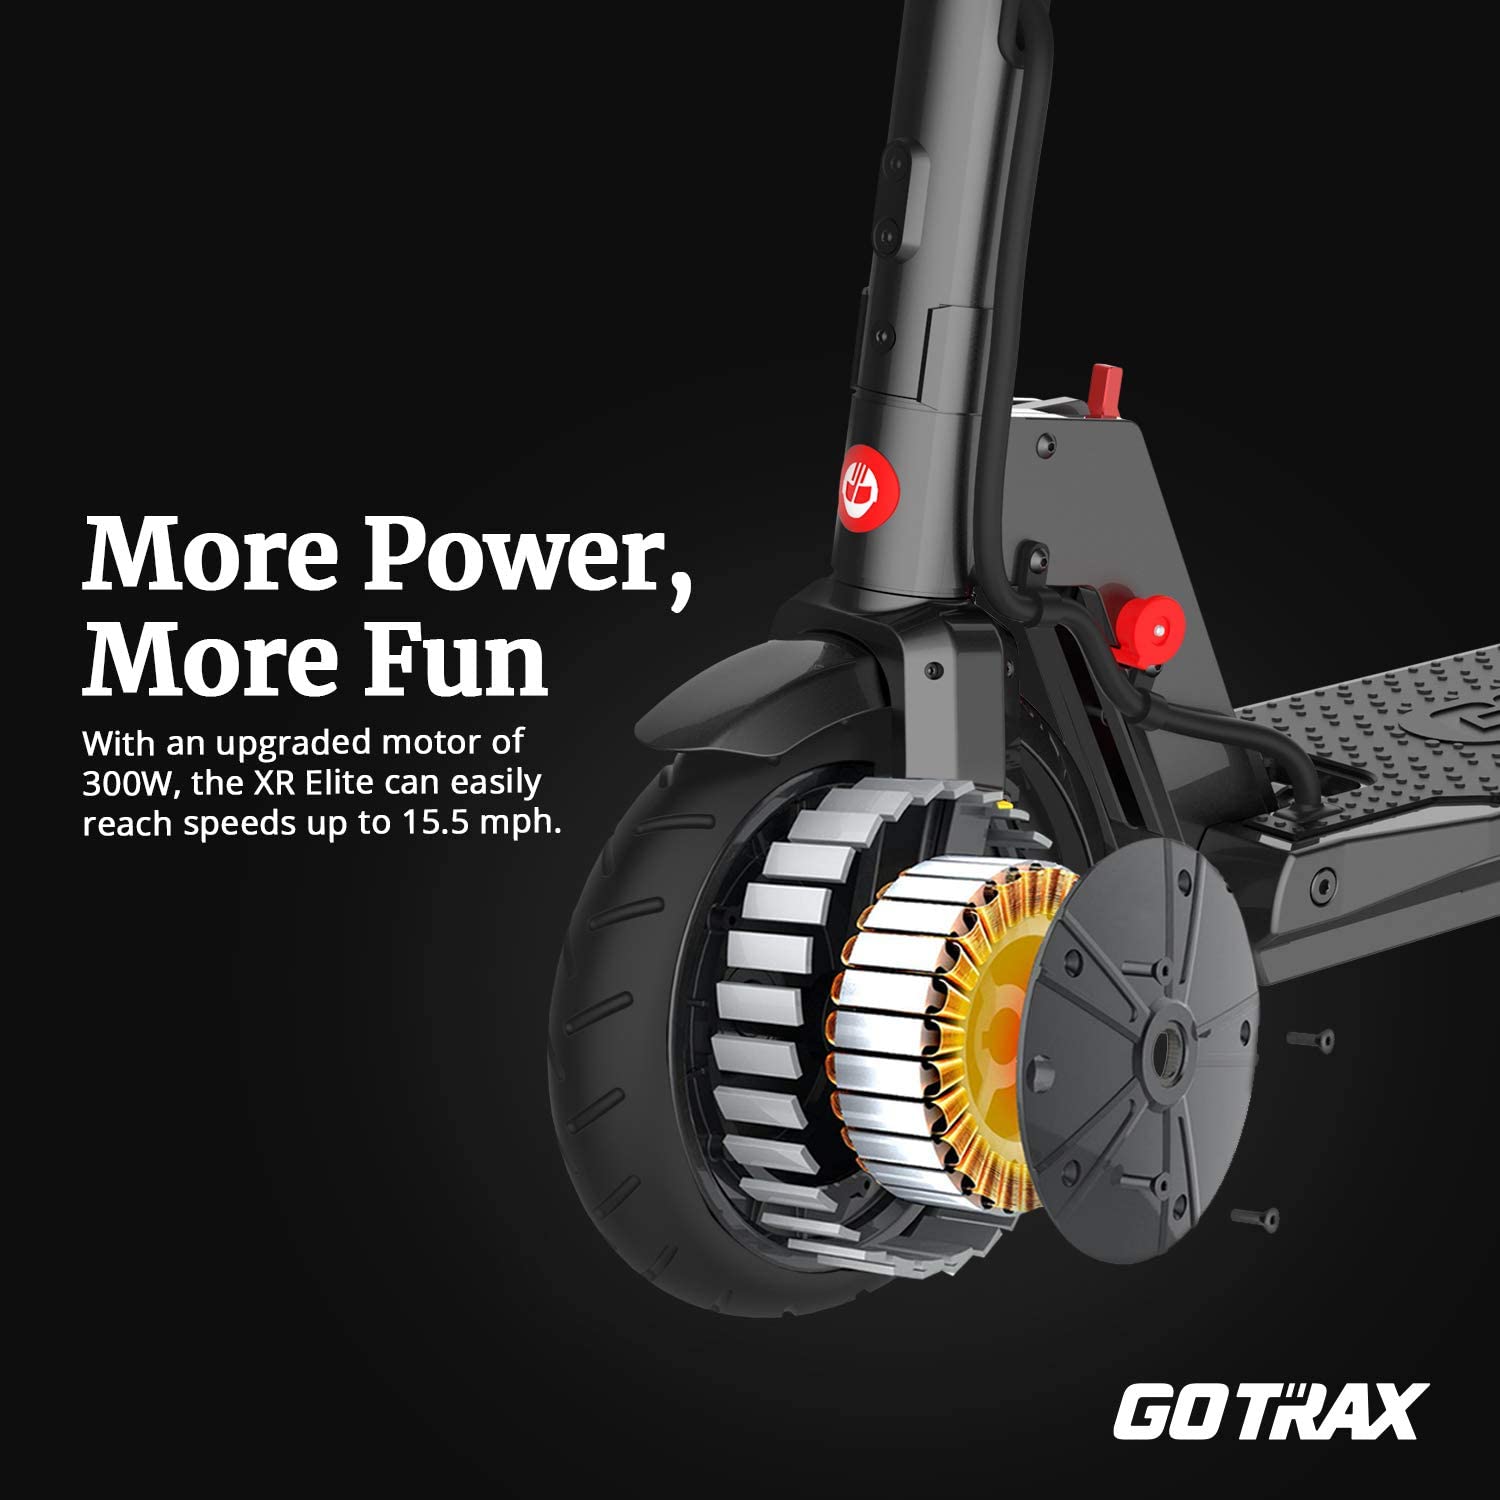 Motor de scooter eléctrico Gotrax XR Elite